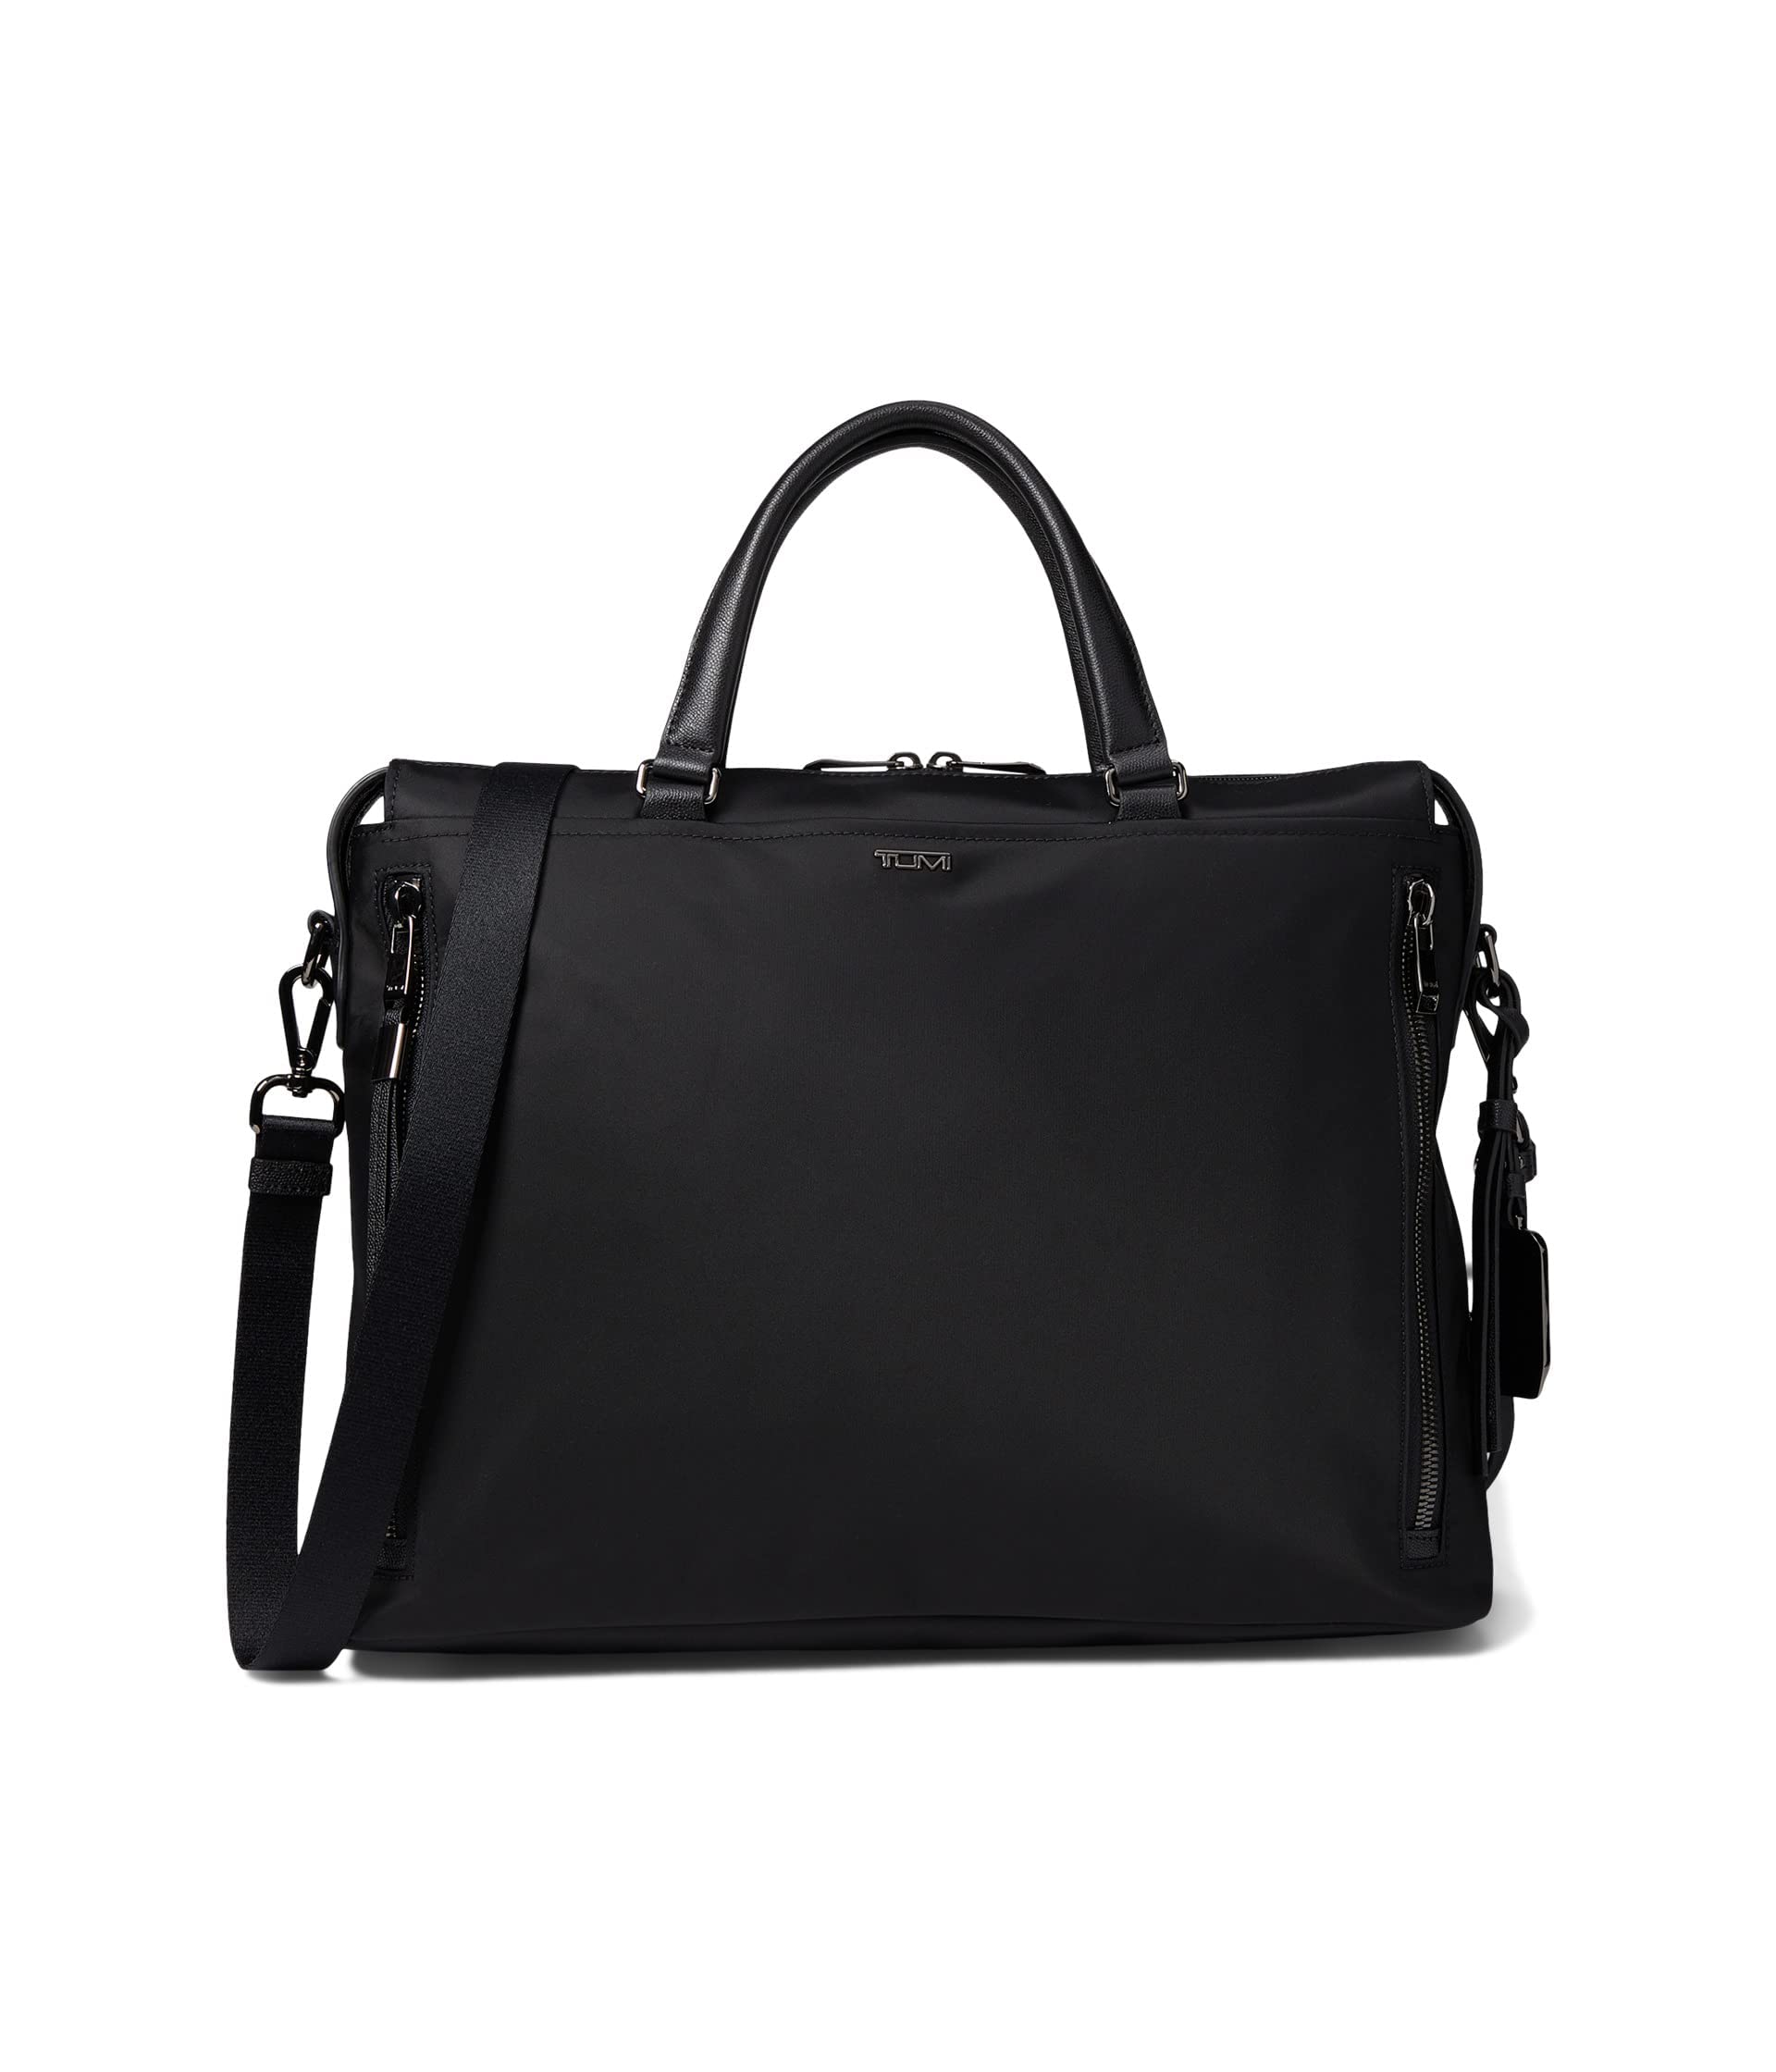 TUMI Voyageur Kendallville Brief - Briefcase Bag for Women & Men - Laptop Carrying Bag - Black & Gunmetal Hardware